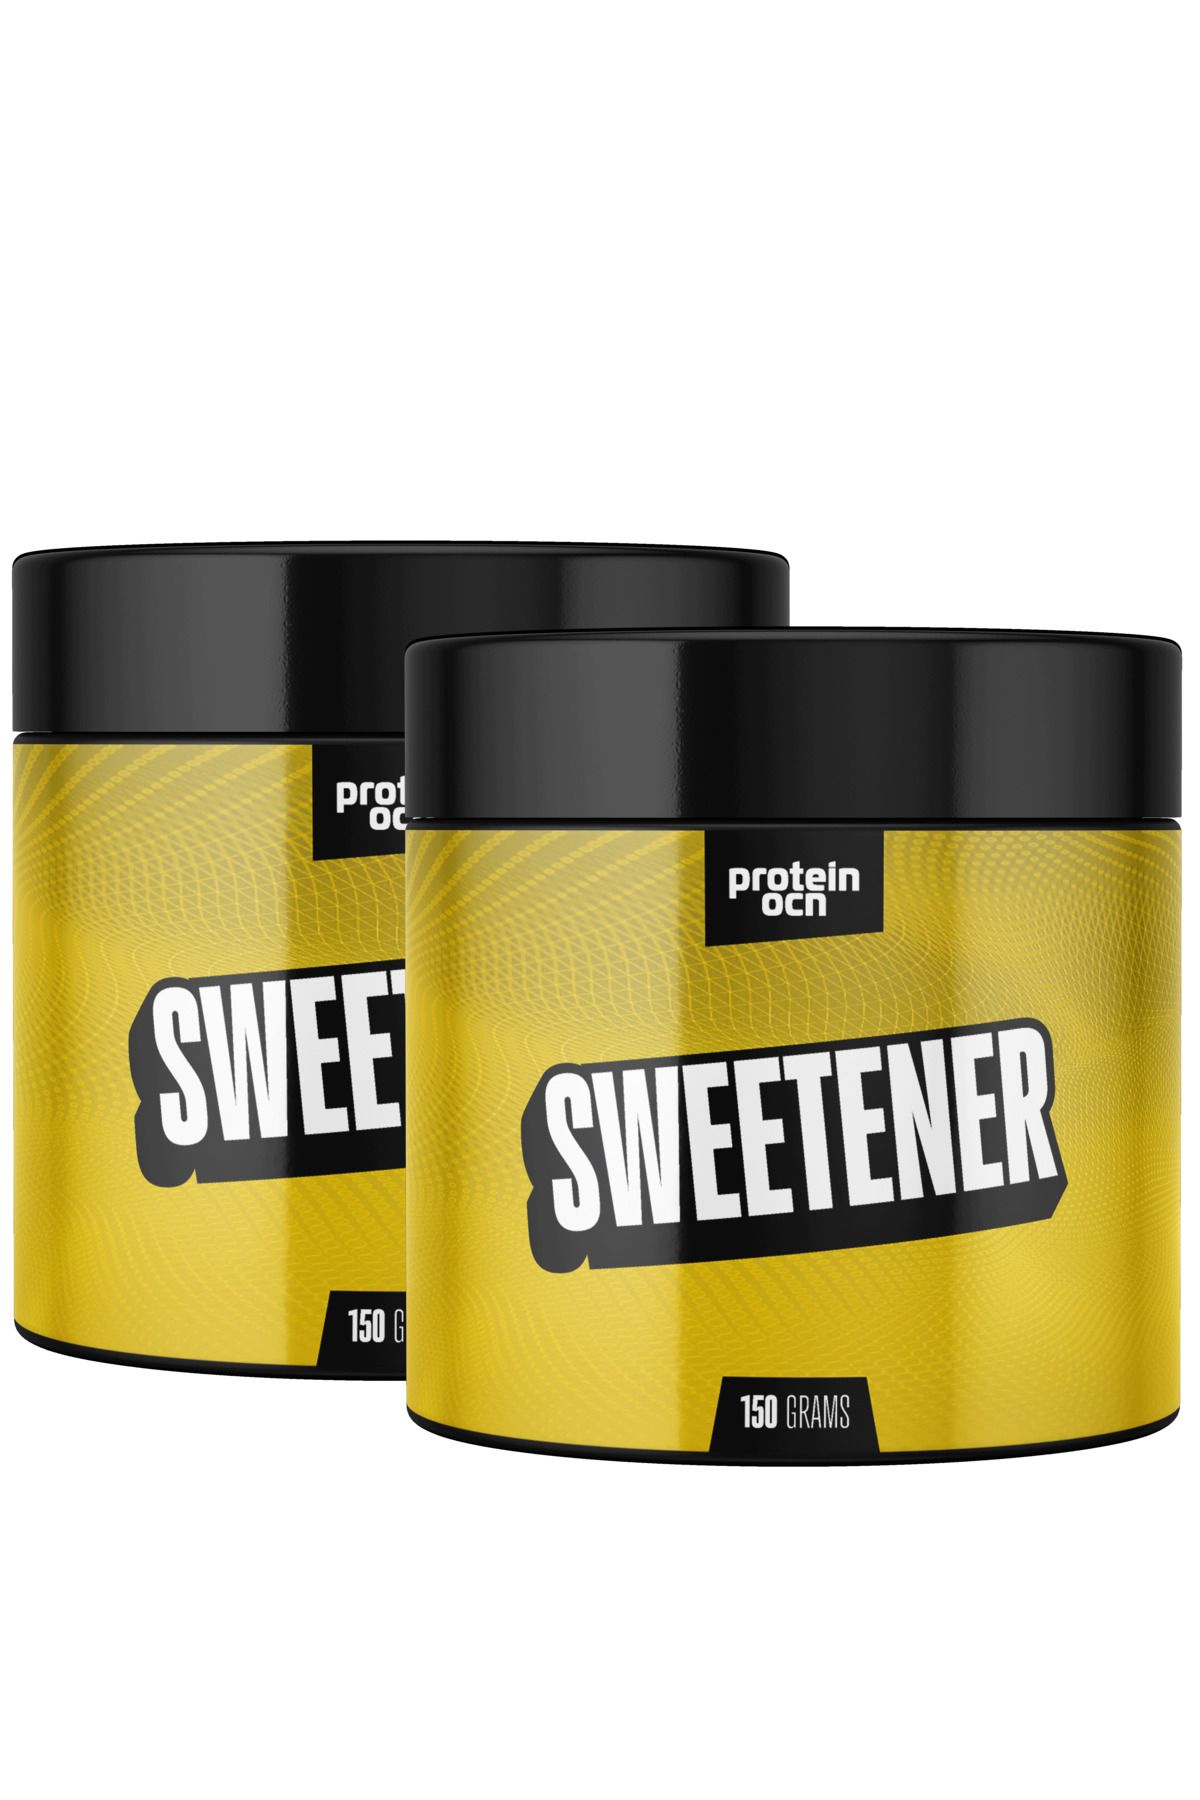 Proteinocean SWEETENER™ - 150g x 2 Adet - 300 servis